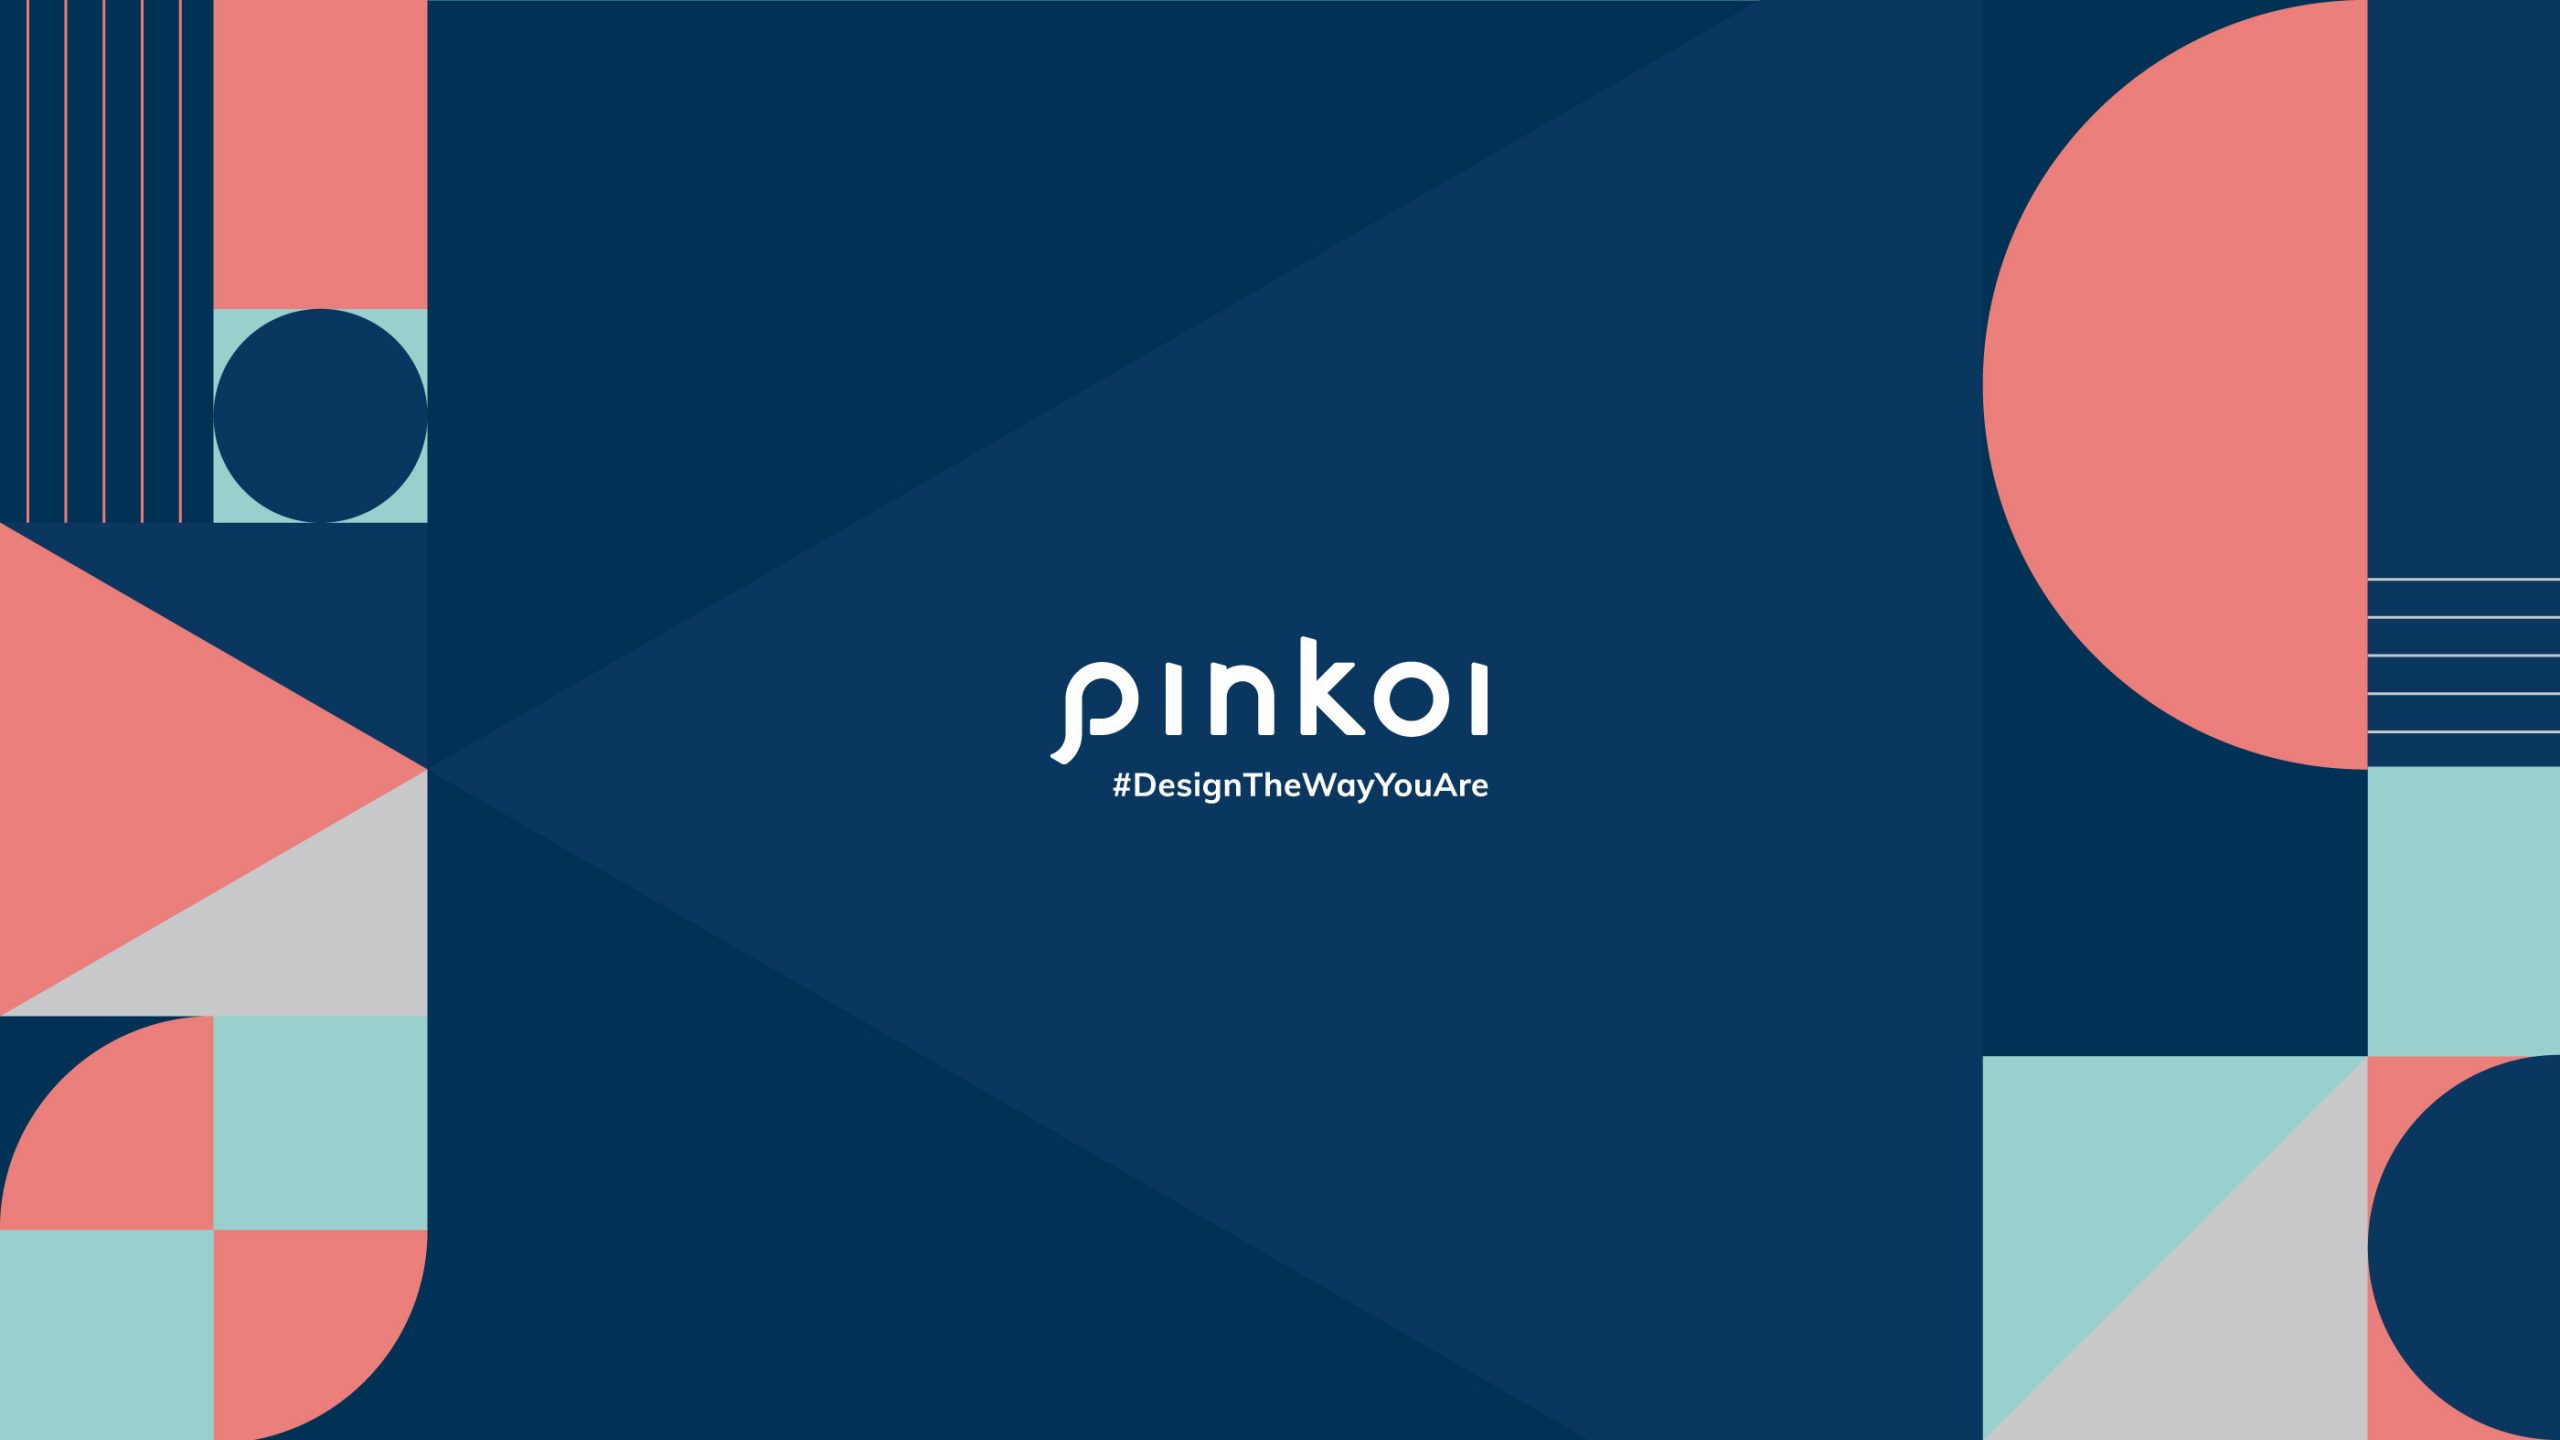 Pinkoi แพลตฟอร์มออนไลน์ที่อยากพางานดีไซน์ไทยและเอเชียไปสู่ระดับโลก